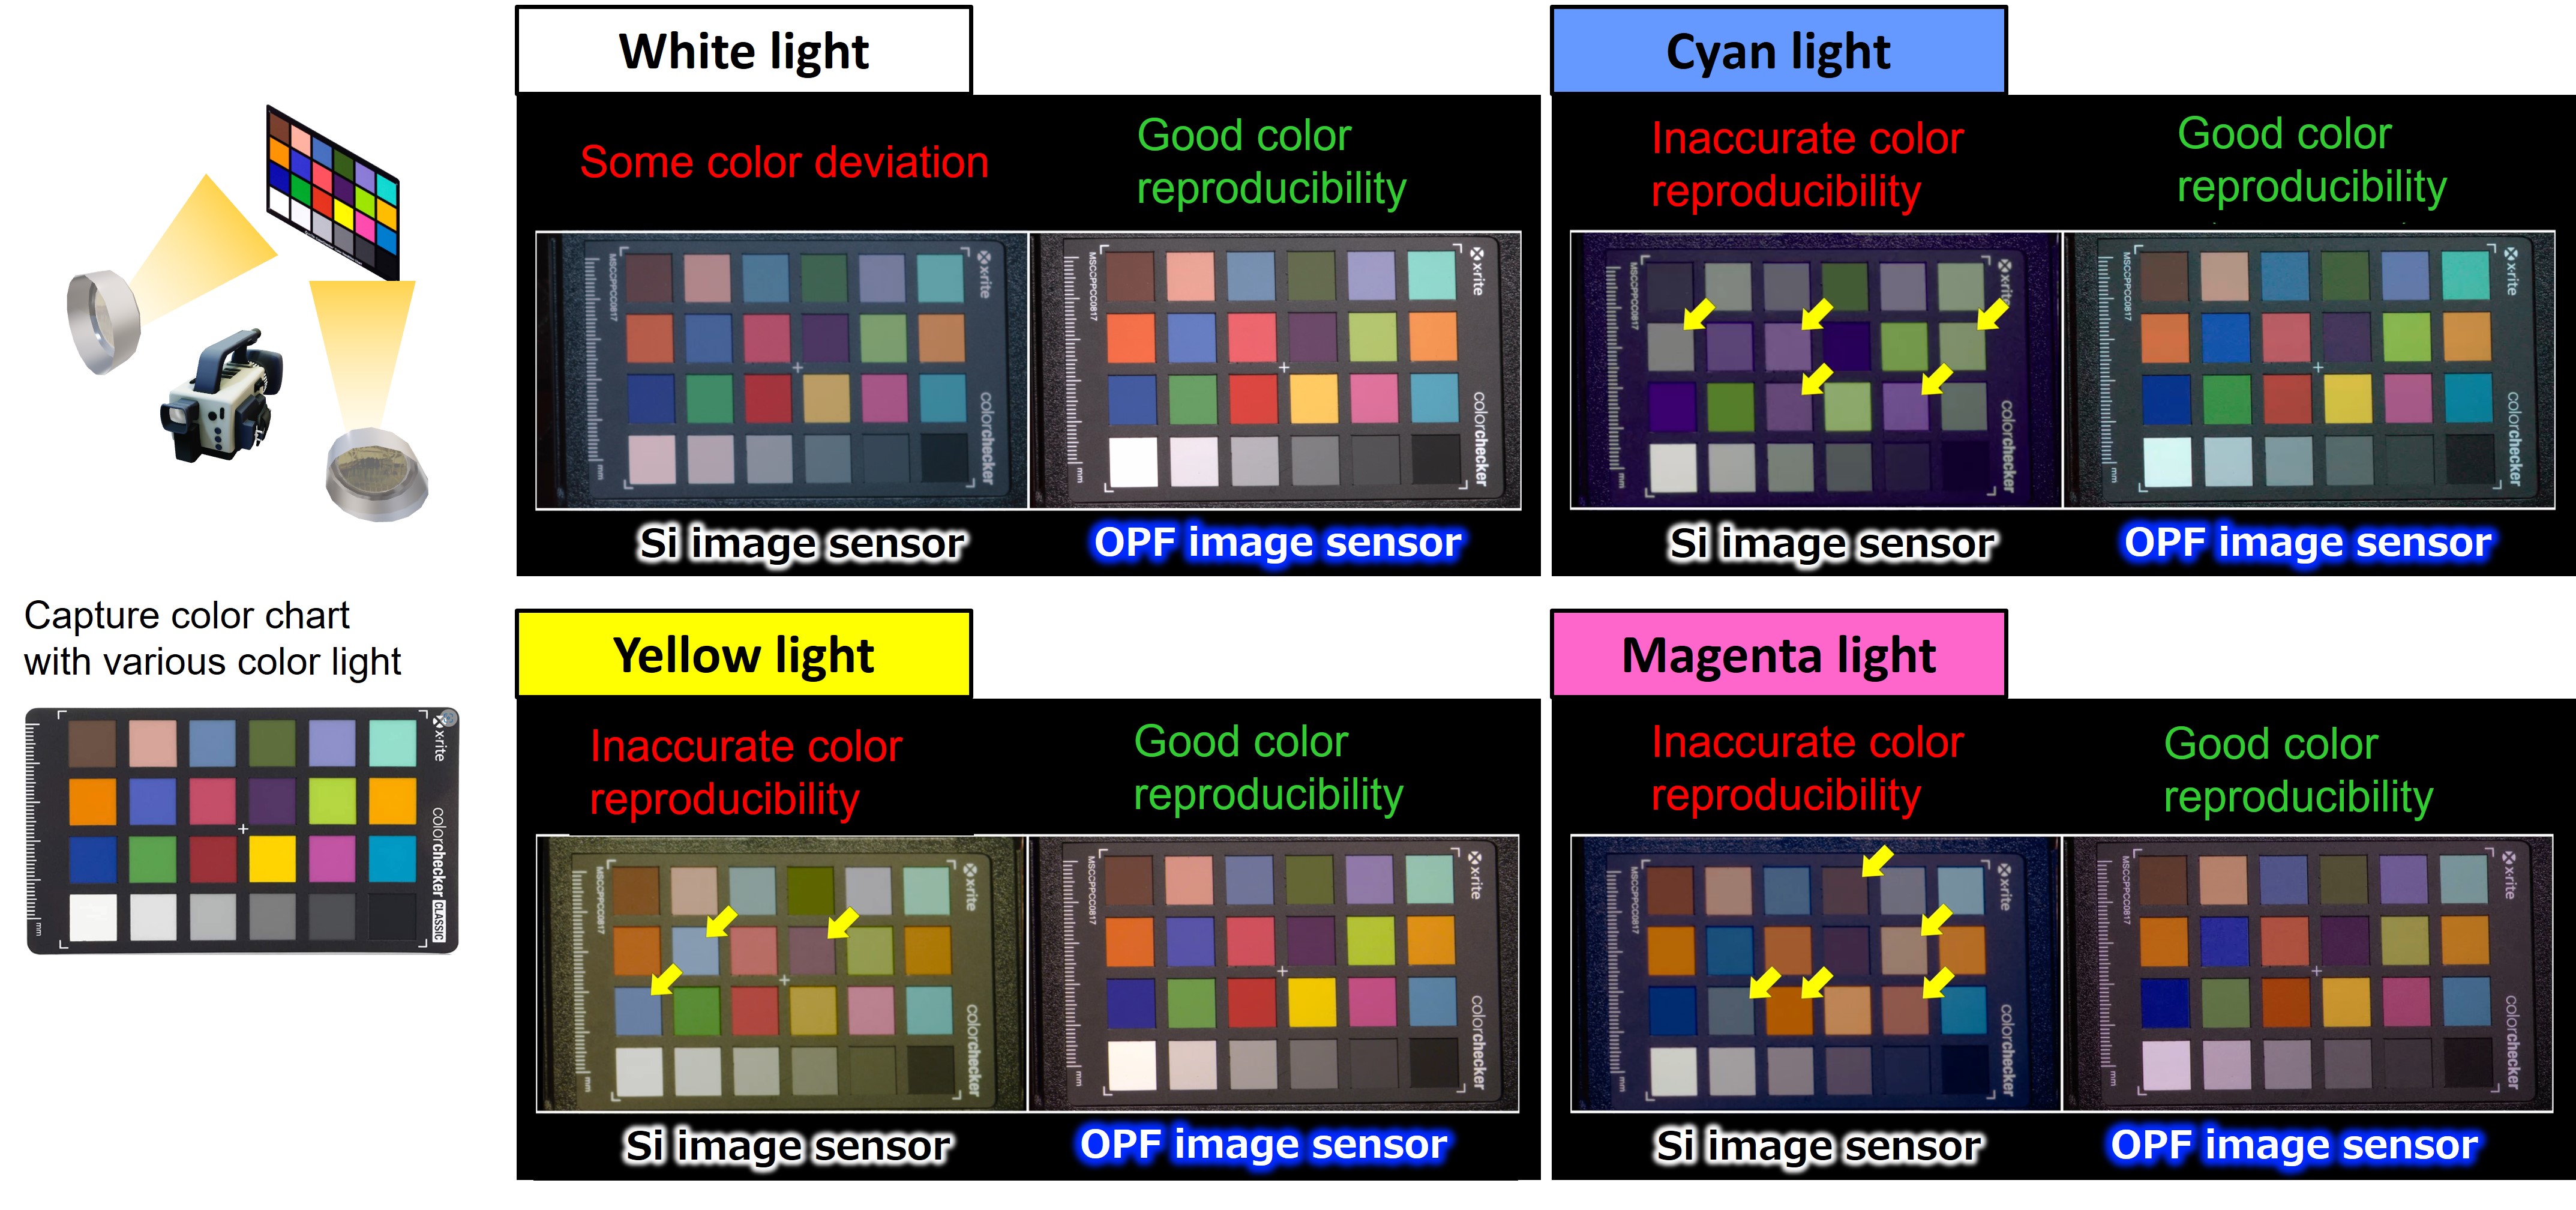 Figure 3. Comparison of color chart imaging under various light sources